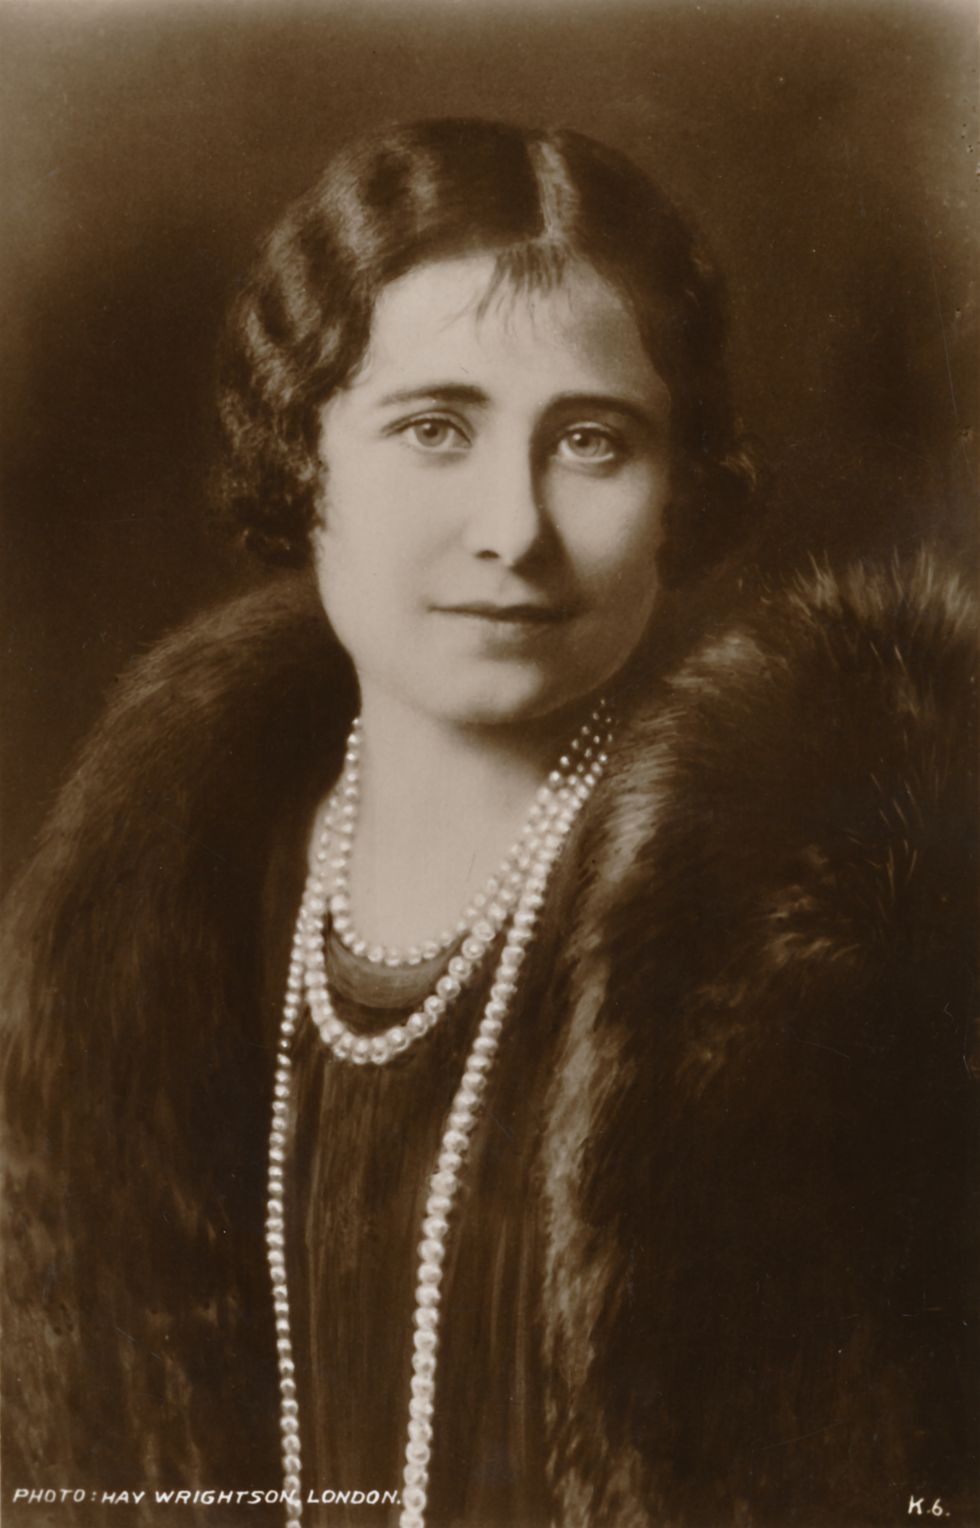 la reina madre, isabel bowes lyion, posando para una foto en blanco y negro